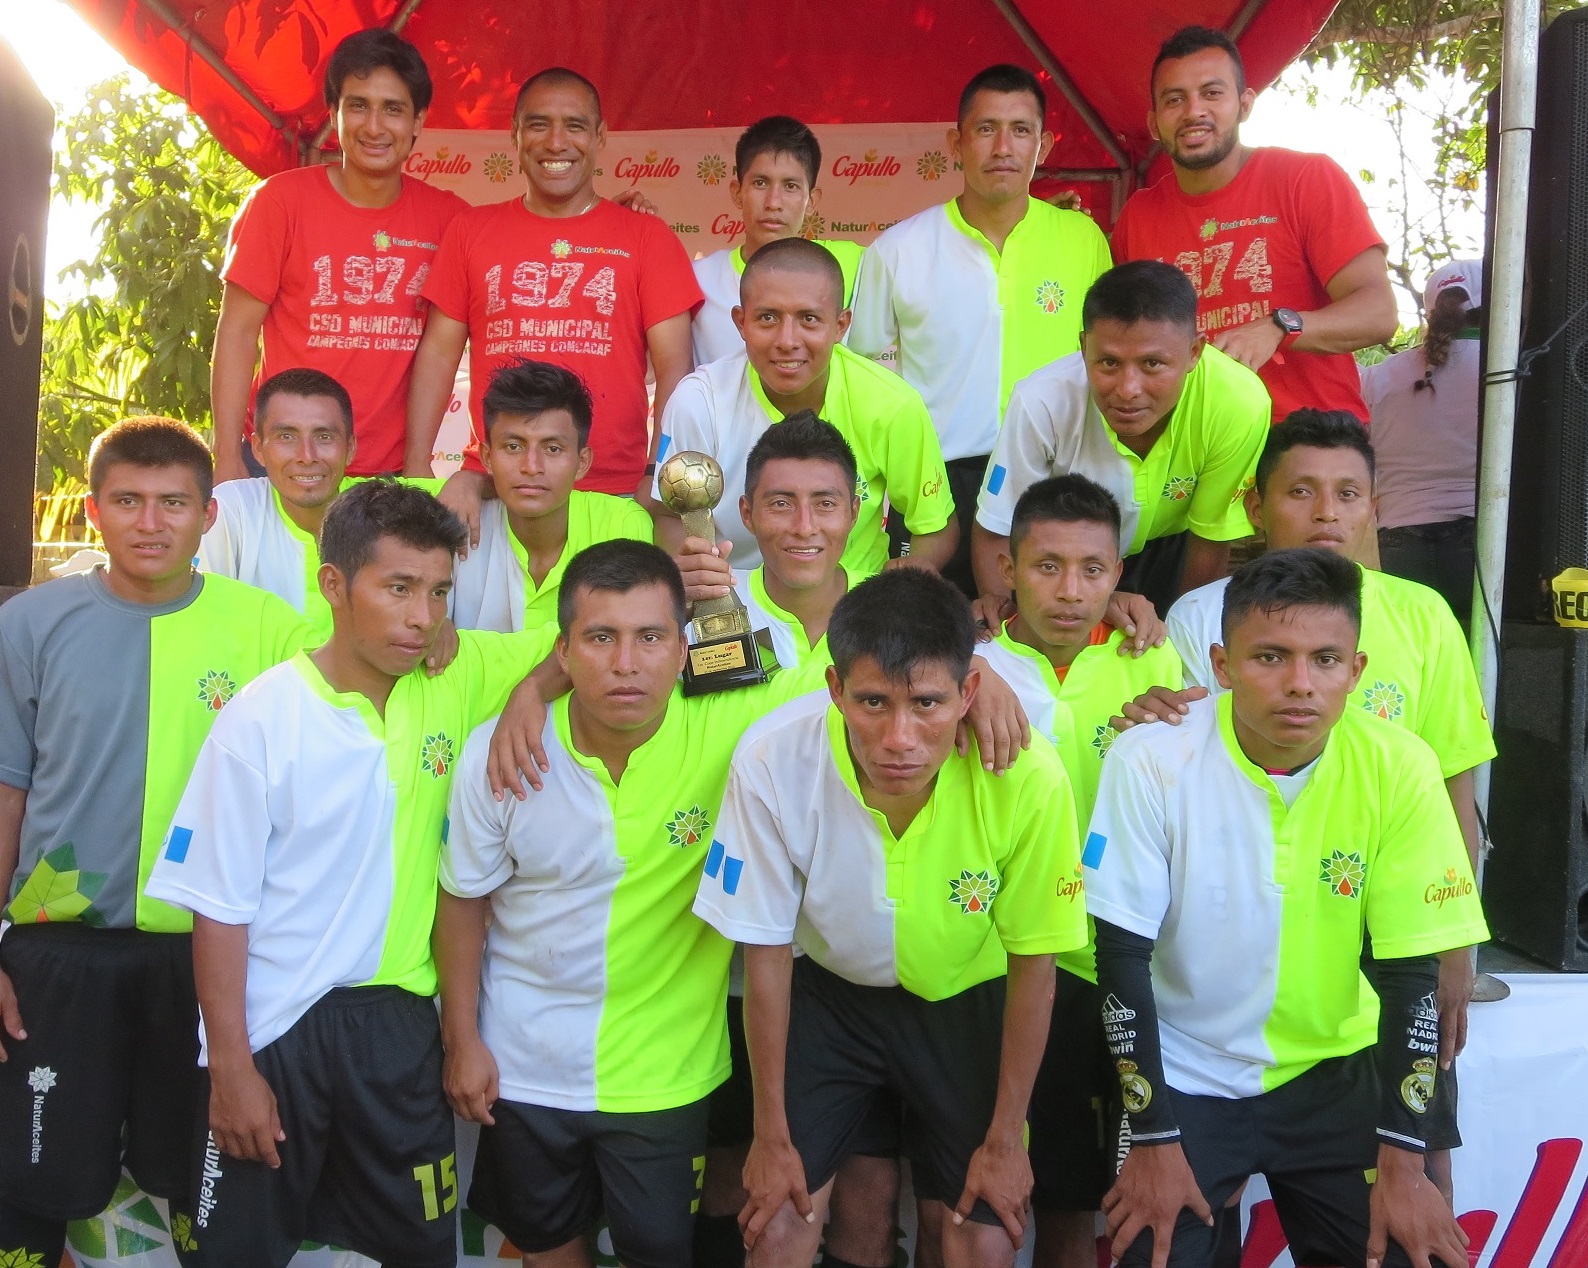 ‘El Pin’ Plata pone el broche de oro a la Copa Independencia NaturAceites 2015